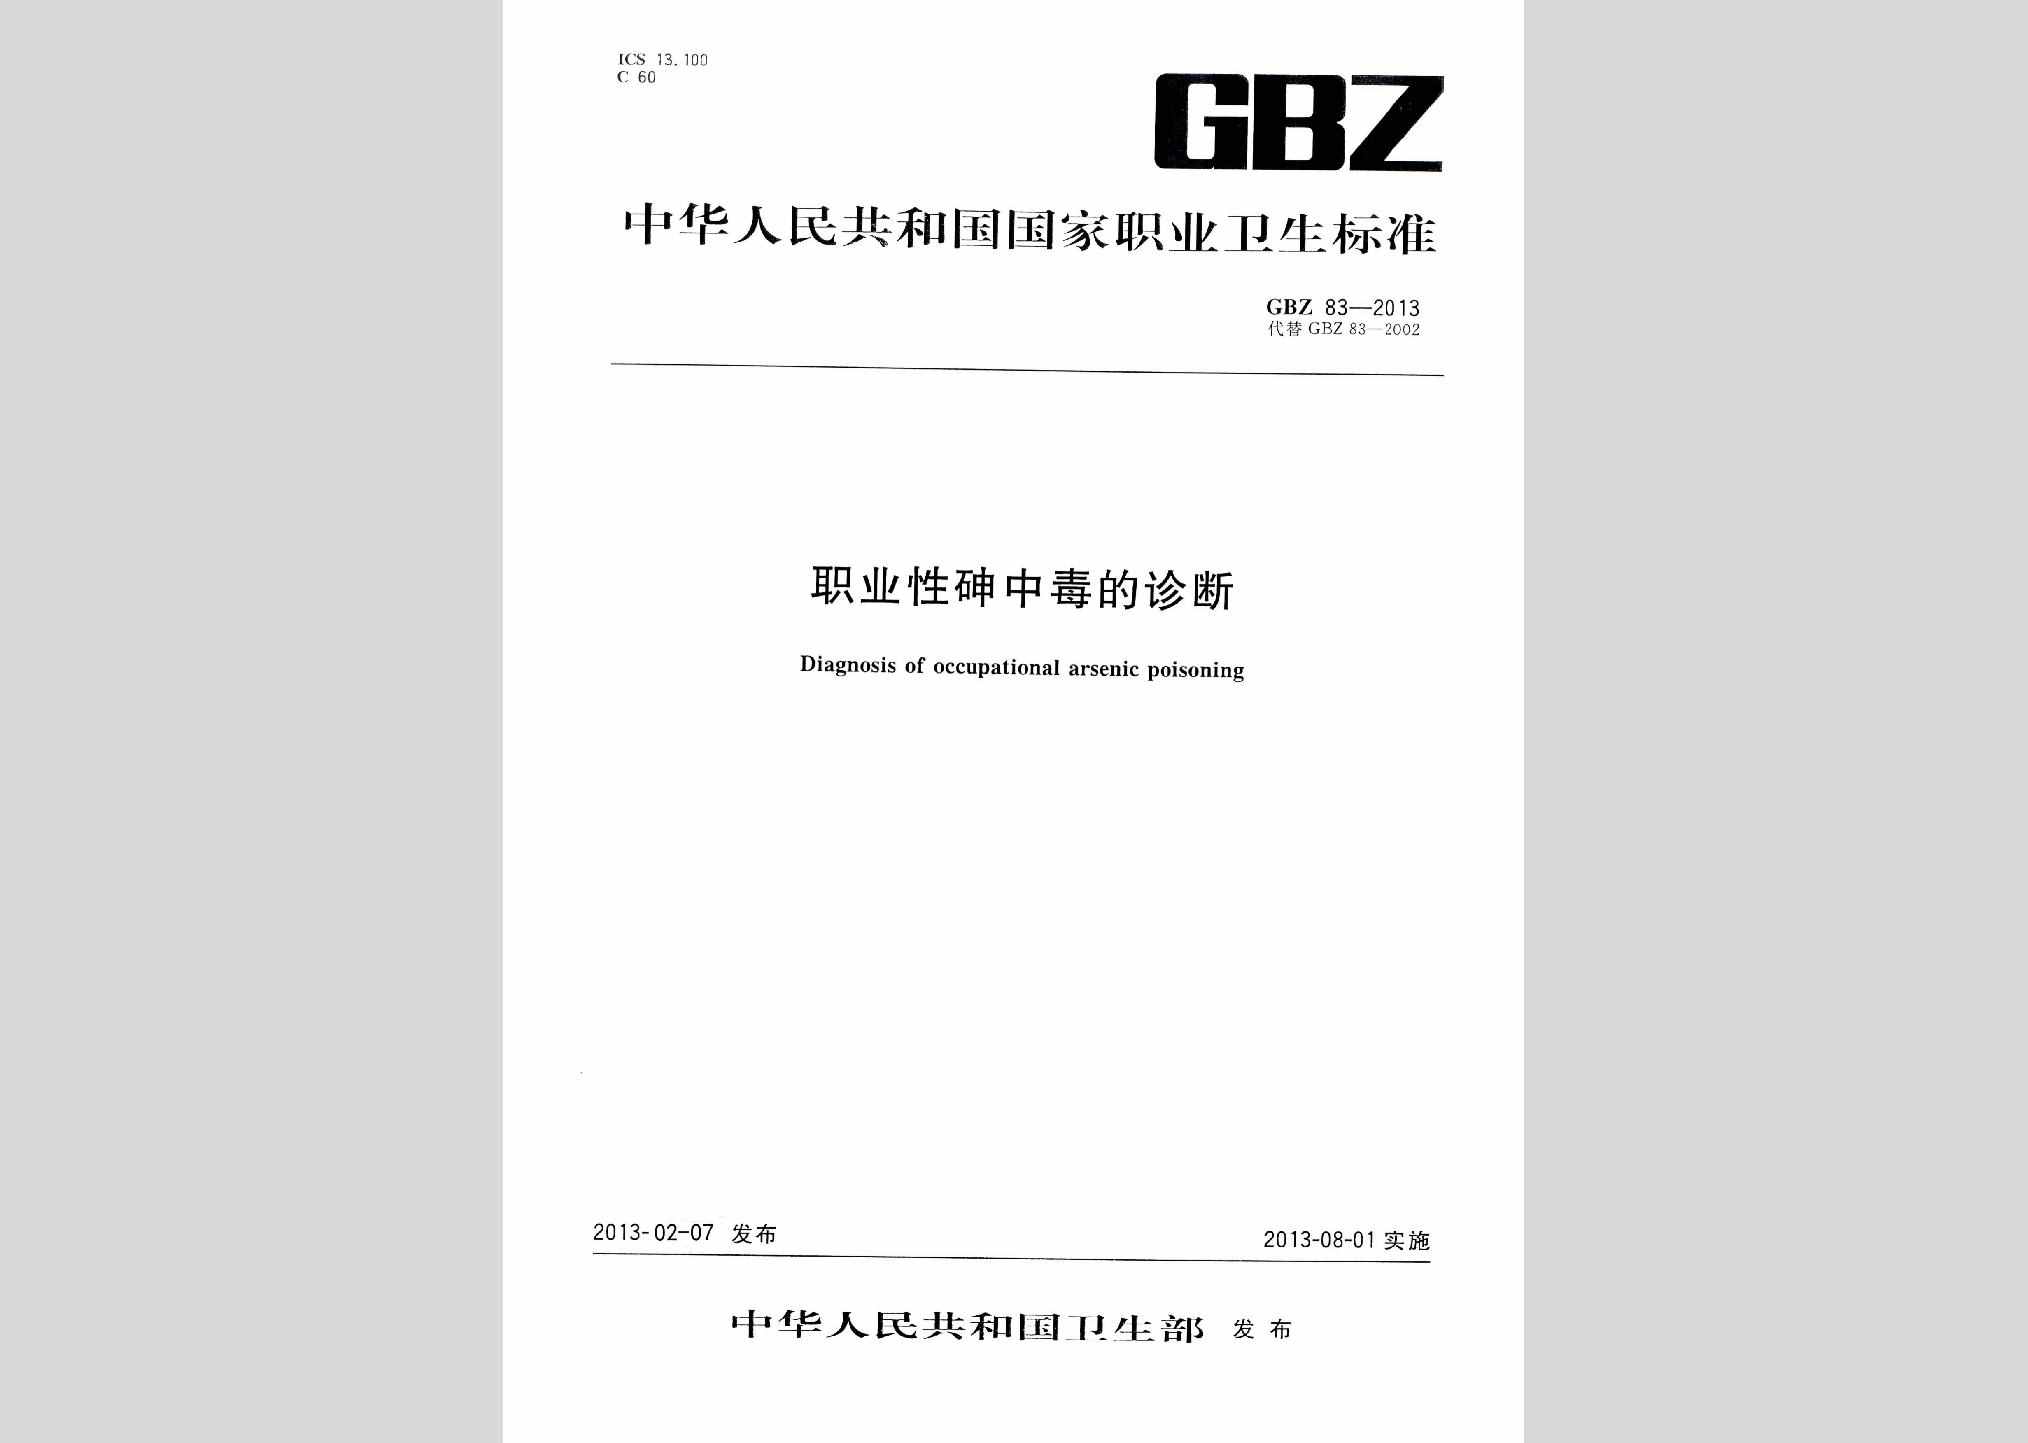 GBZ83-2013：职业性砷中毒的诊断